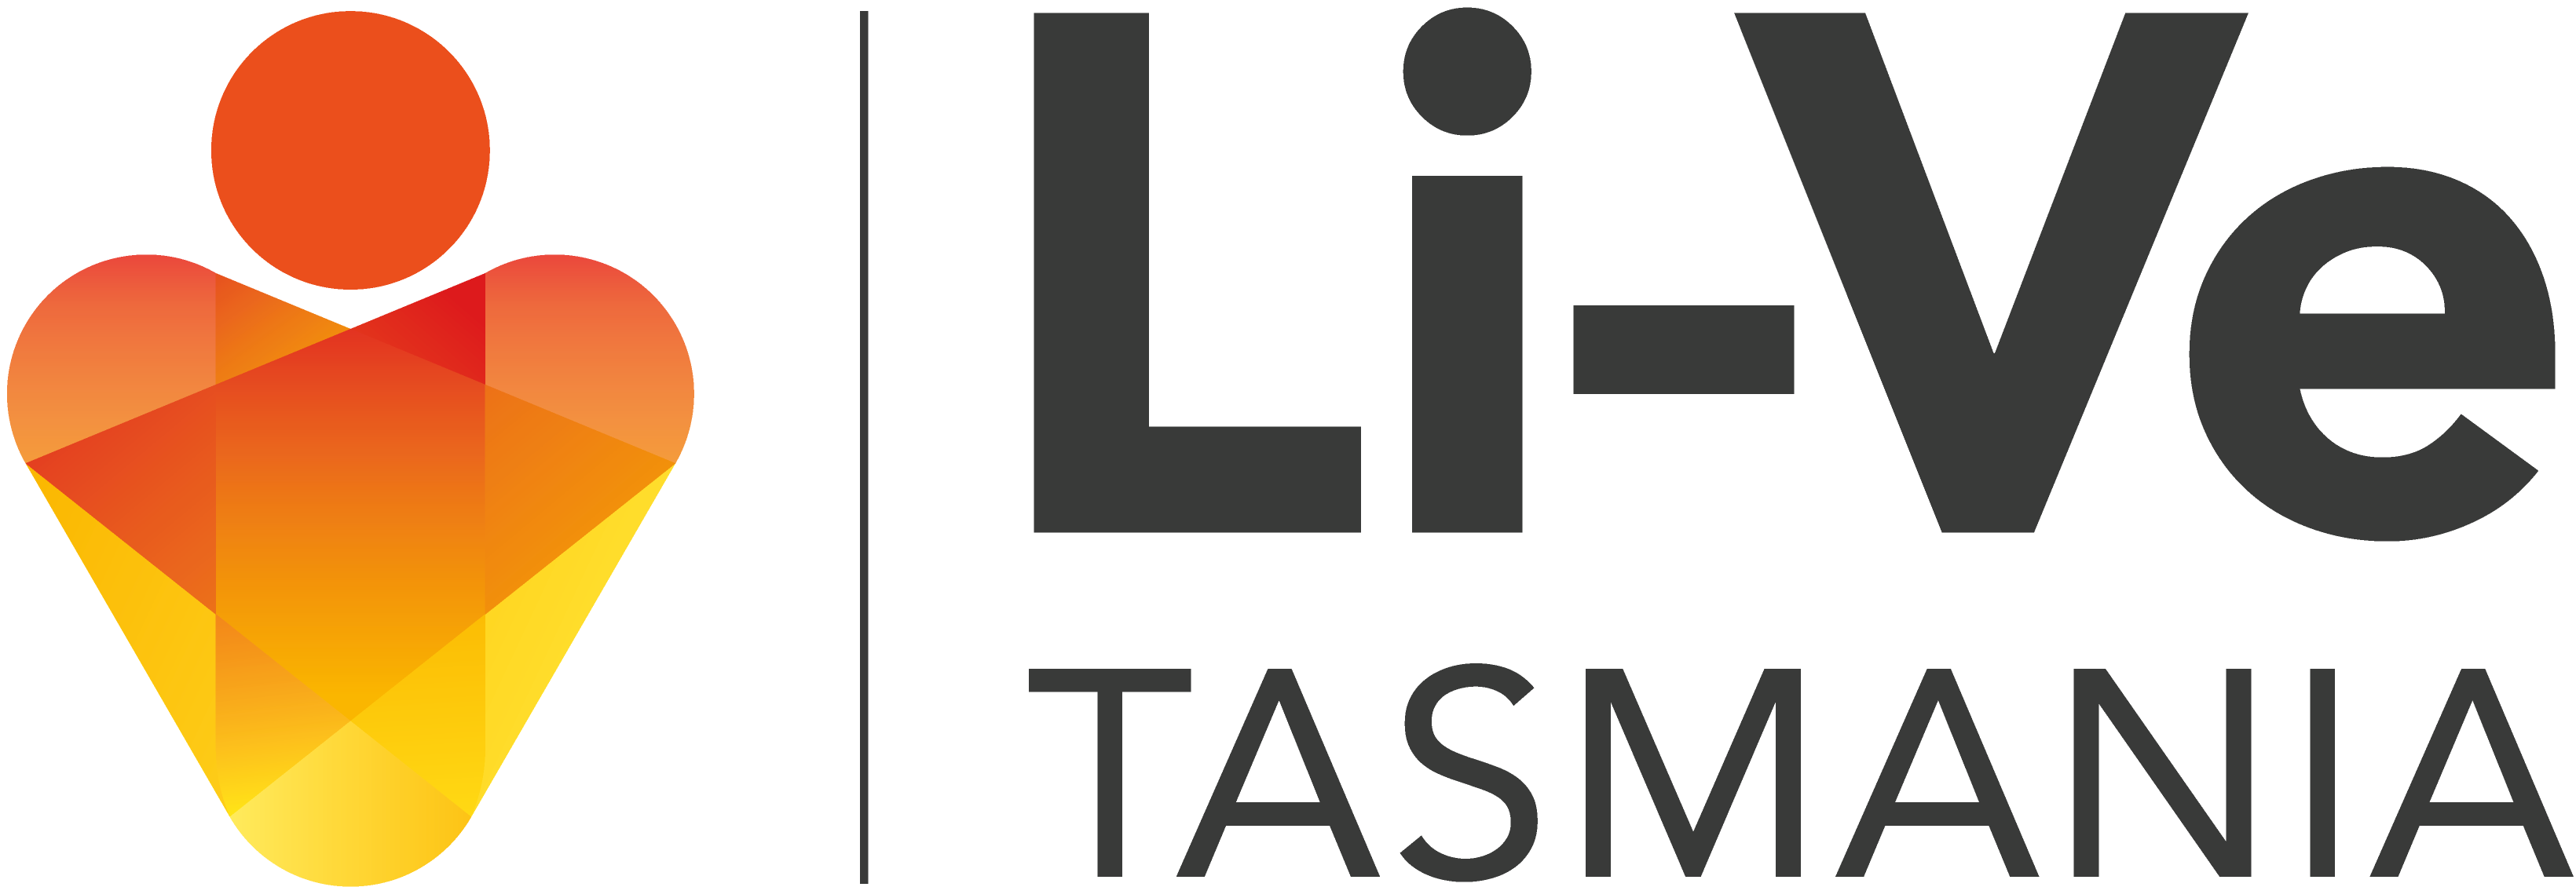 Li-Ve Tasmania